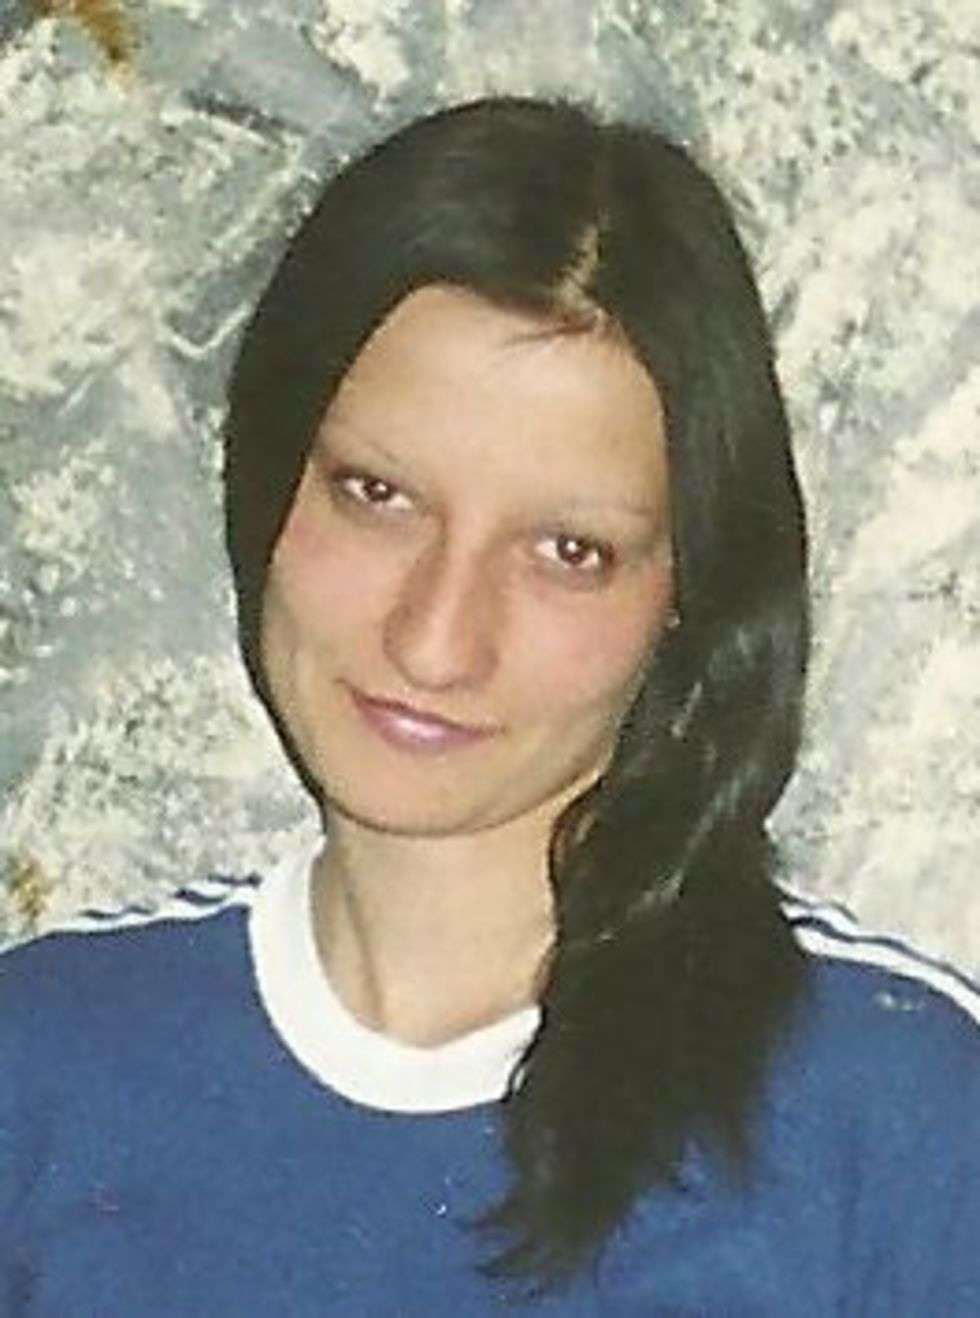  9 listopada 2010 r. w Chełmie (Lubelskie) zaginął Andrzej Grzywaczewski. W dniu zaginięcia miał 27 lat. Ma 170 cm wzrostu i niebieskie oczy.